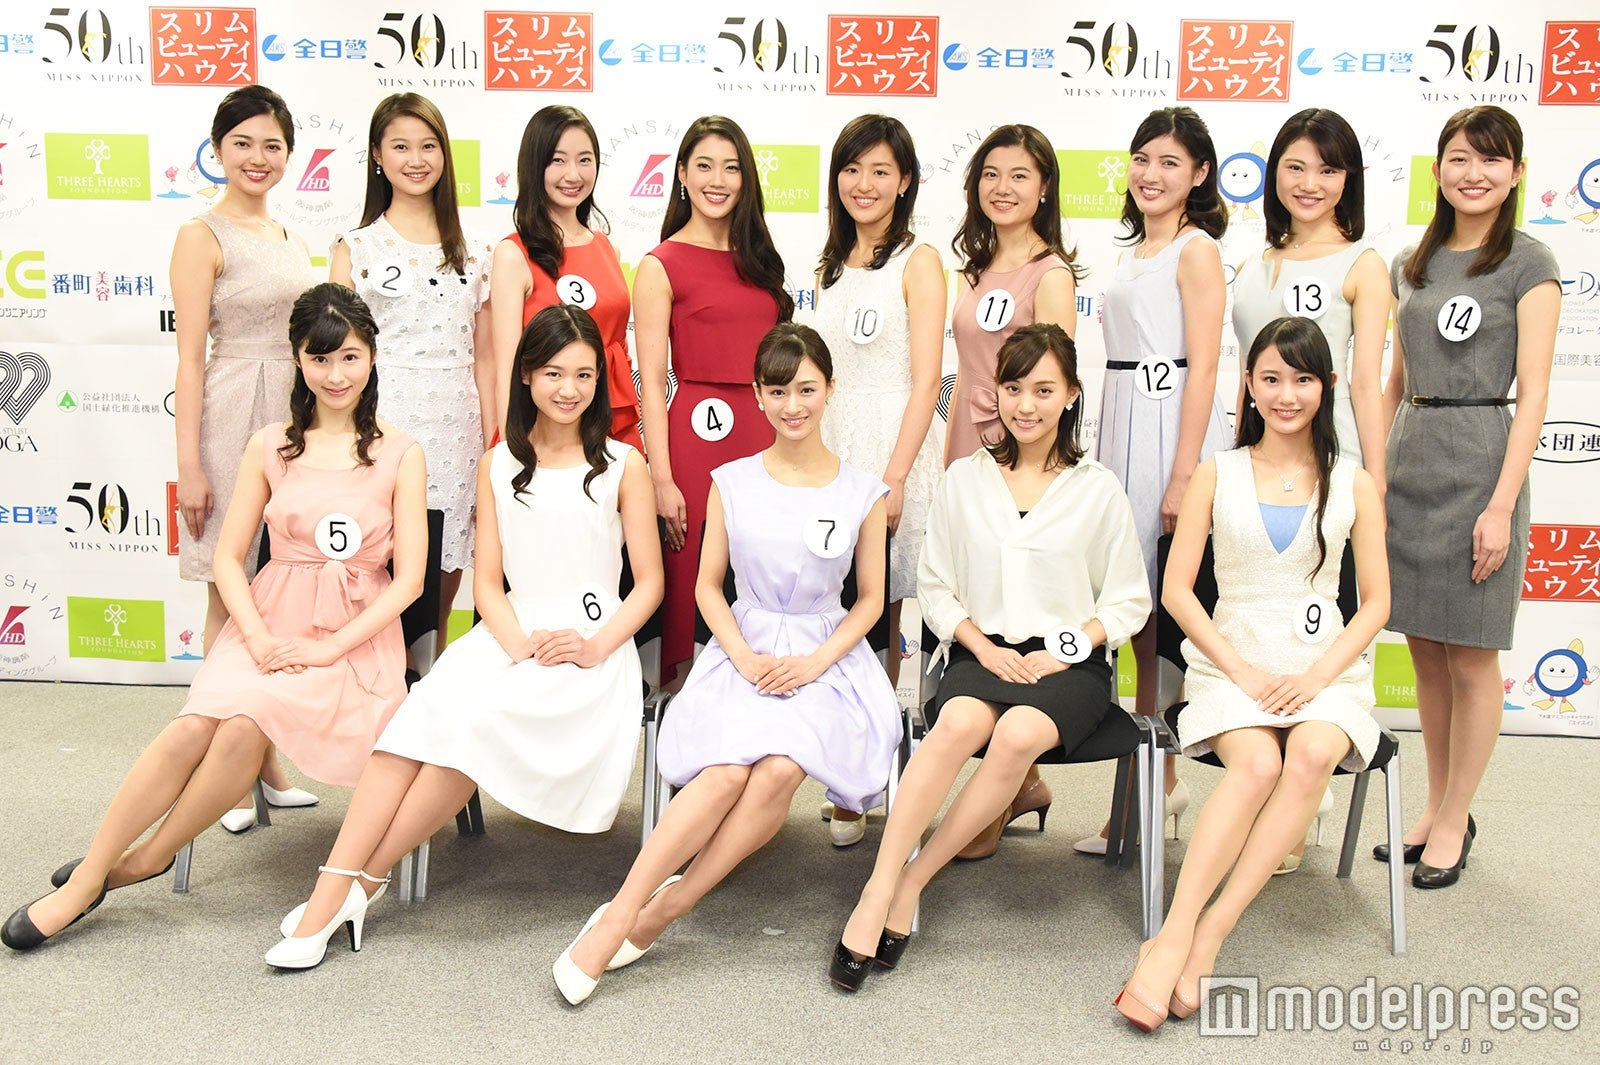 ミス日本18 ファイナリスト14名お披露目 最年少は現役東大生 幻のミス慶応 も モデルプレス